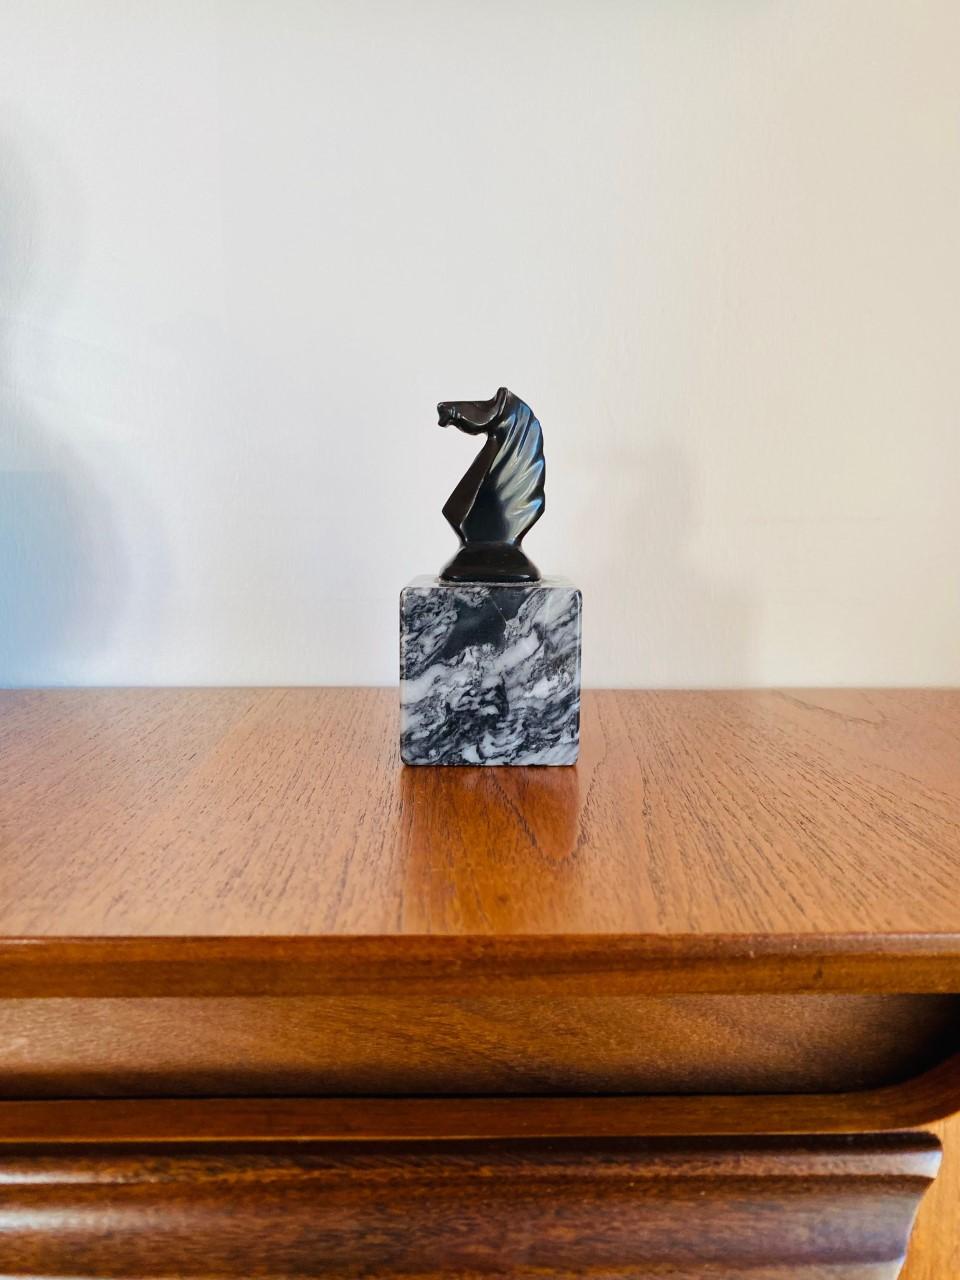 Une addition belle et unique à votre bureau. Ce magnifique buste de cheval repose sur une base en marbre, ce qui en fait un élément élégant et discret de votre décor. La base est enveloppée de marbrures noires et blanches tandis que le buste du